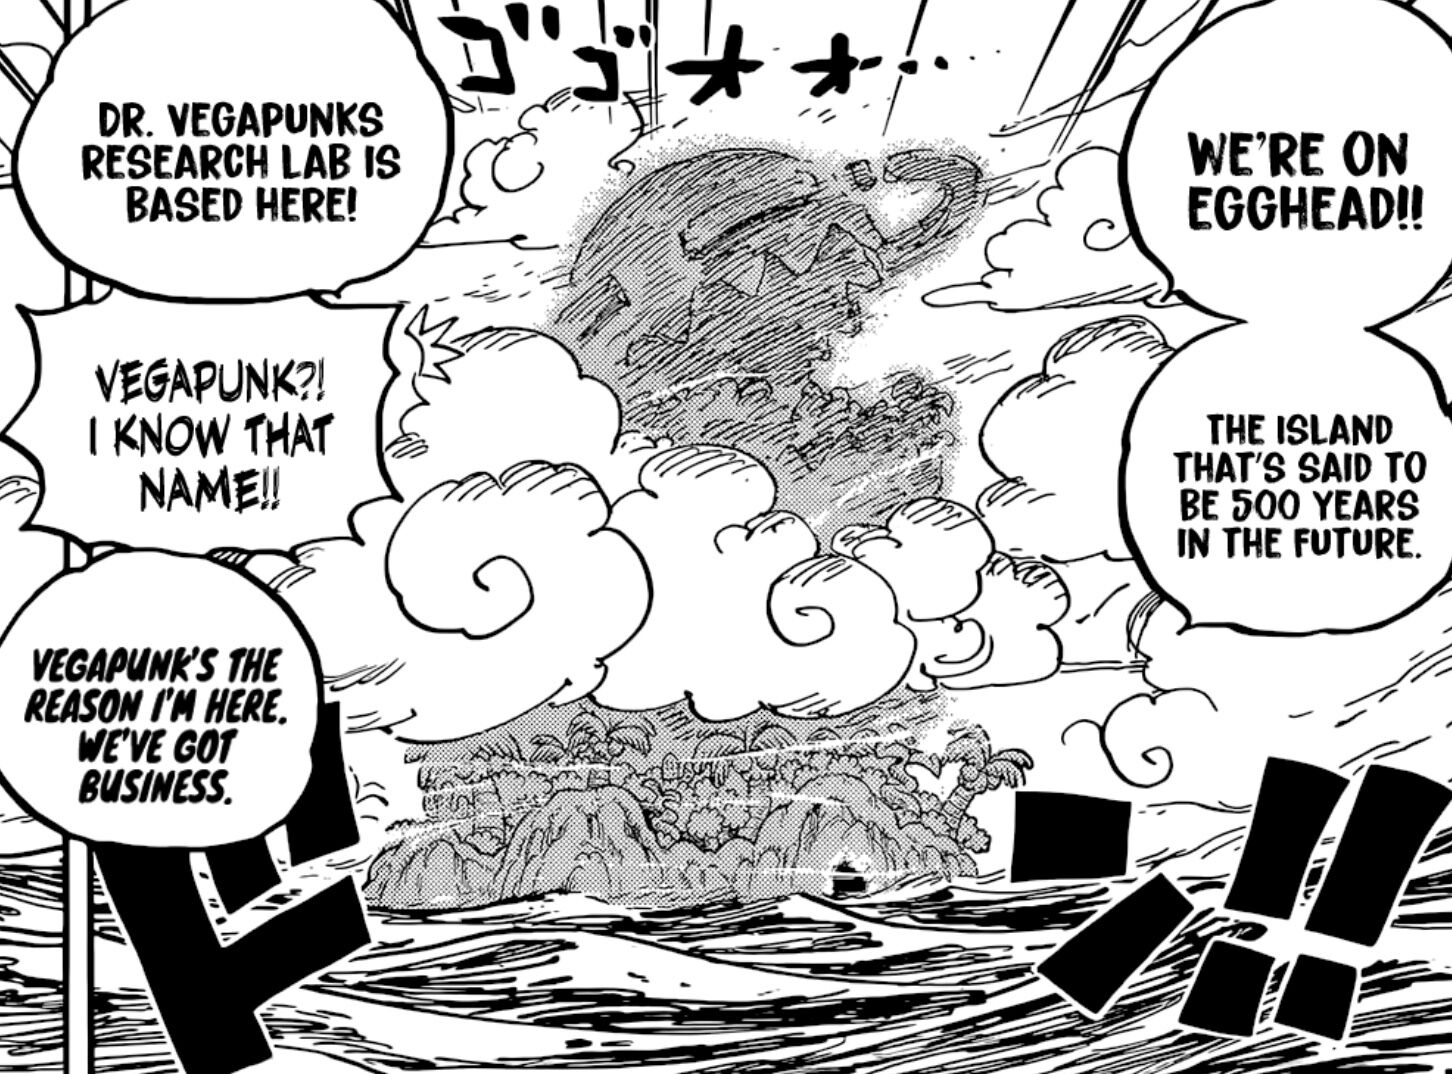 Kapitel 1061 - Insel der Zukunft, Egghead - One Piece Weekly Jump Kapitel  - Pirateboard - Das One Piece Forum